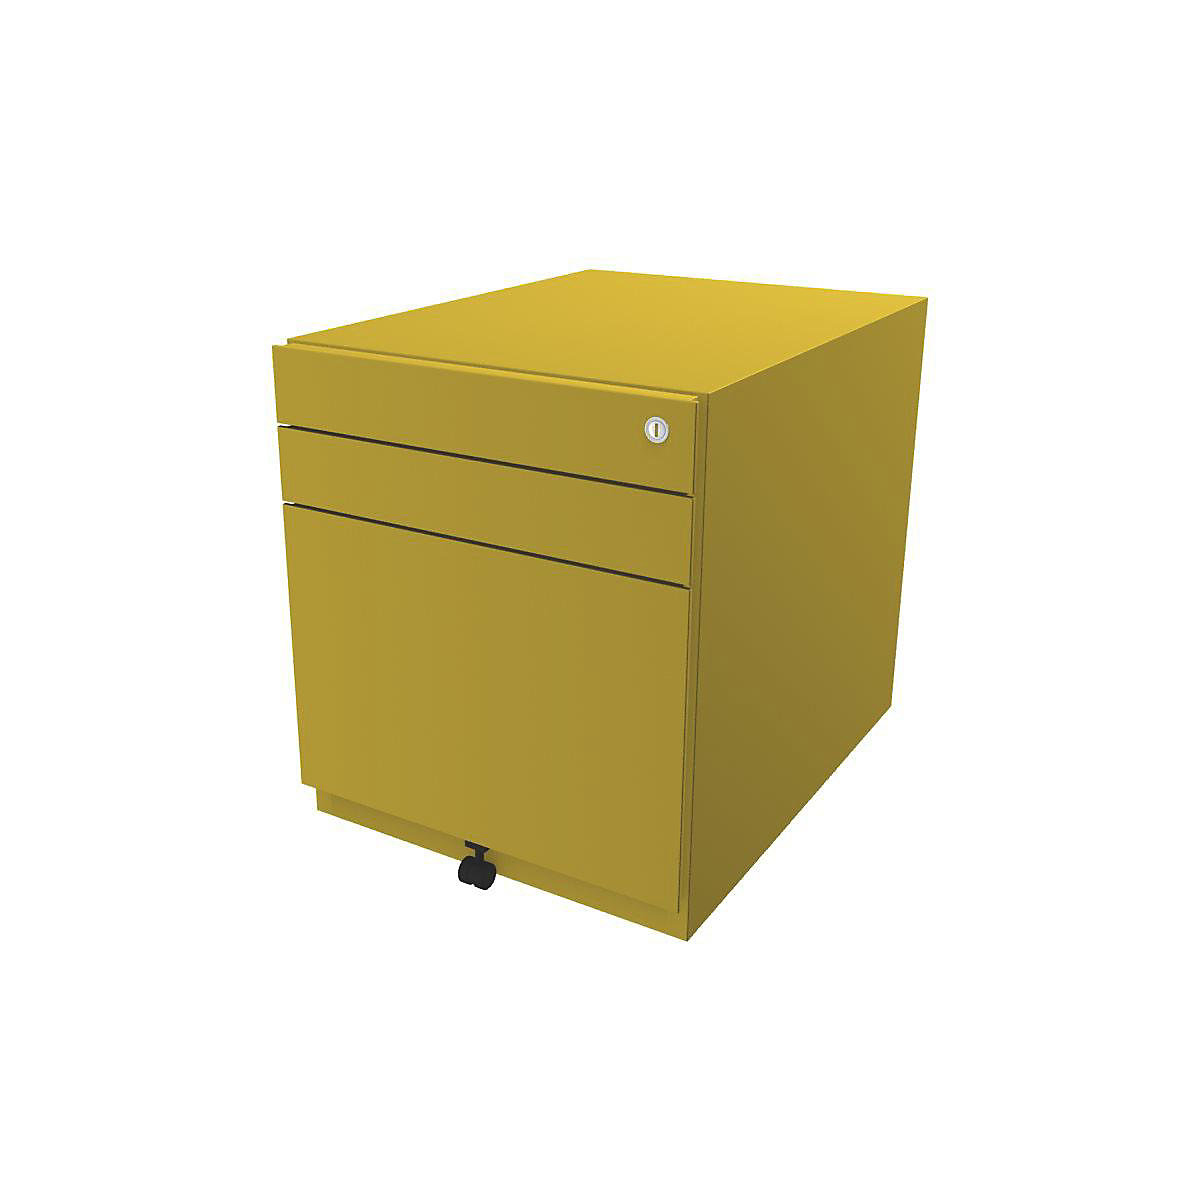 Rollcontainer Note™, mit 2 Universalschubladen, 1 Hängeregistratur BISLEY, HxBxT 565 x 420 x 565 mm, gelb-5